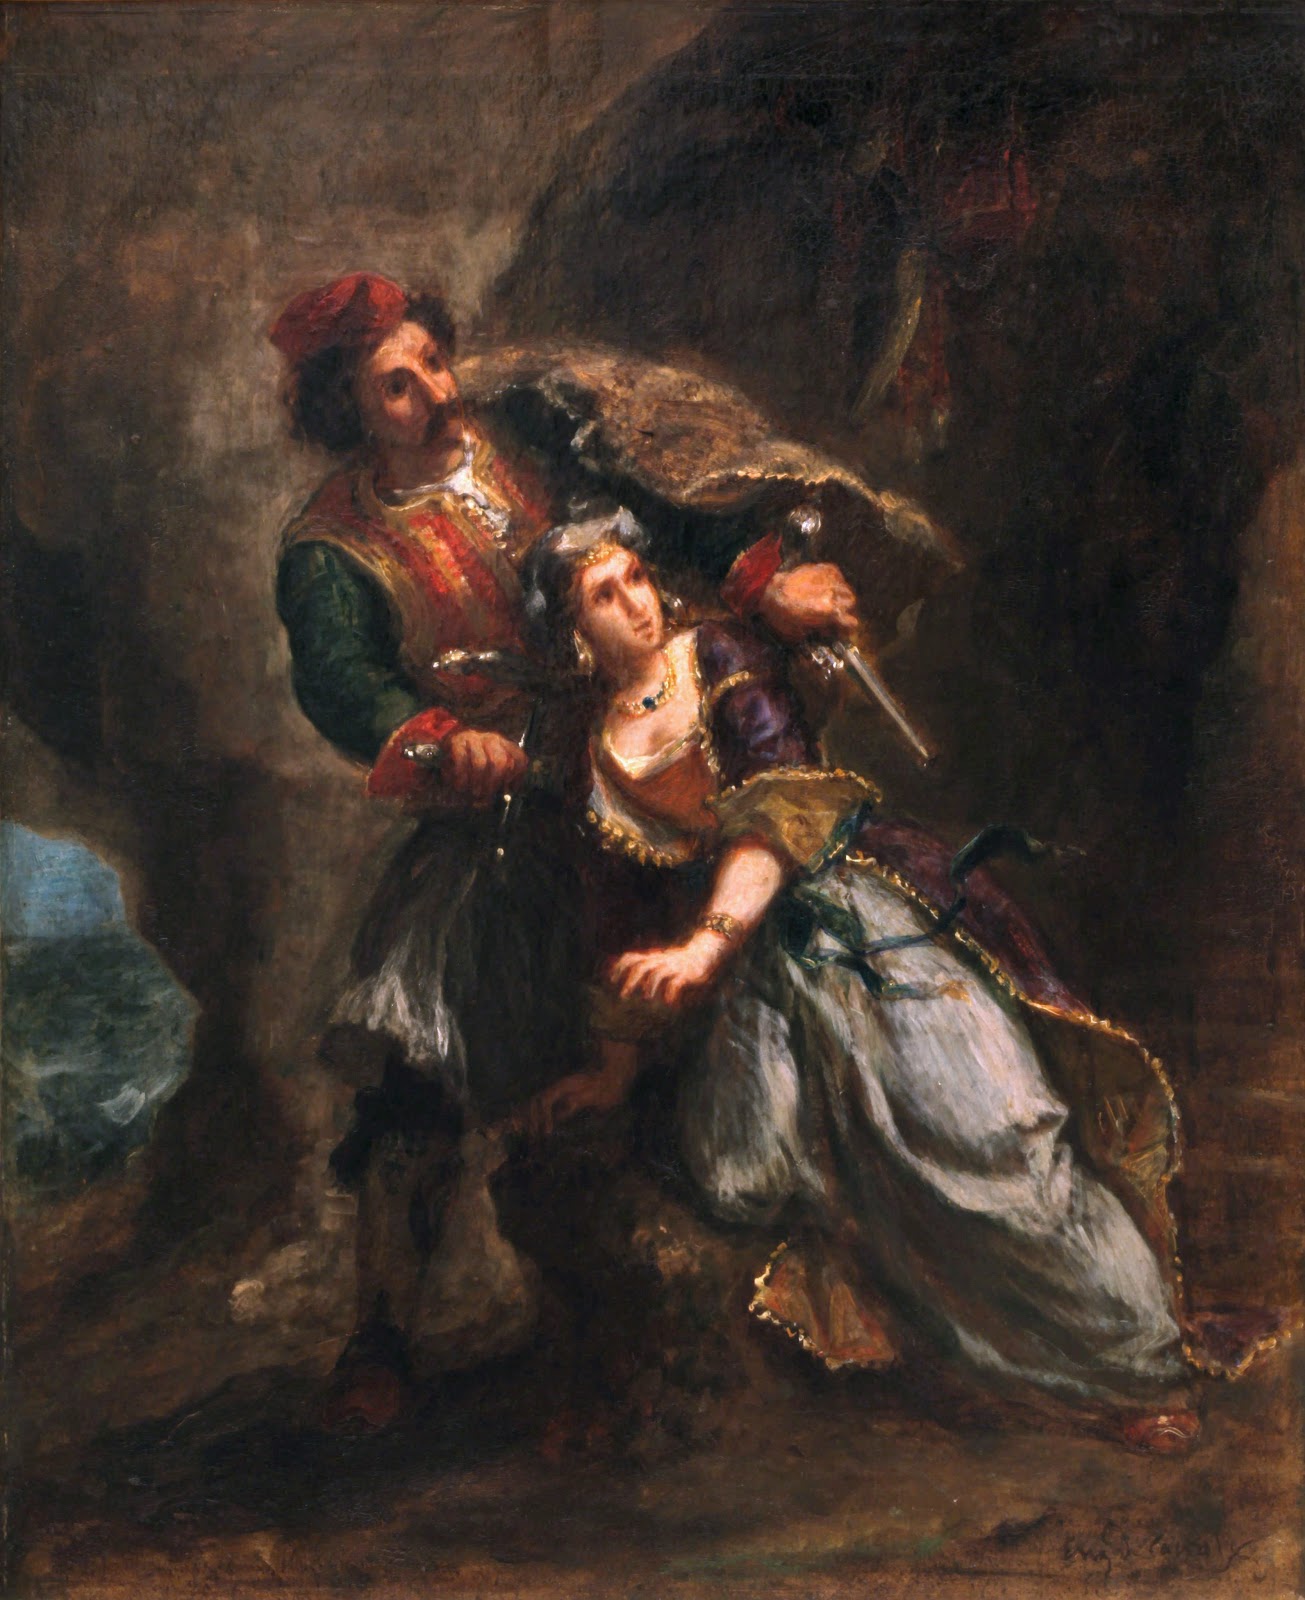 Eugene+Delacroix-1798-1863 (286).jpg